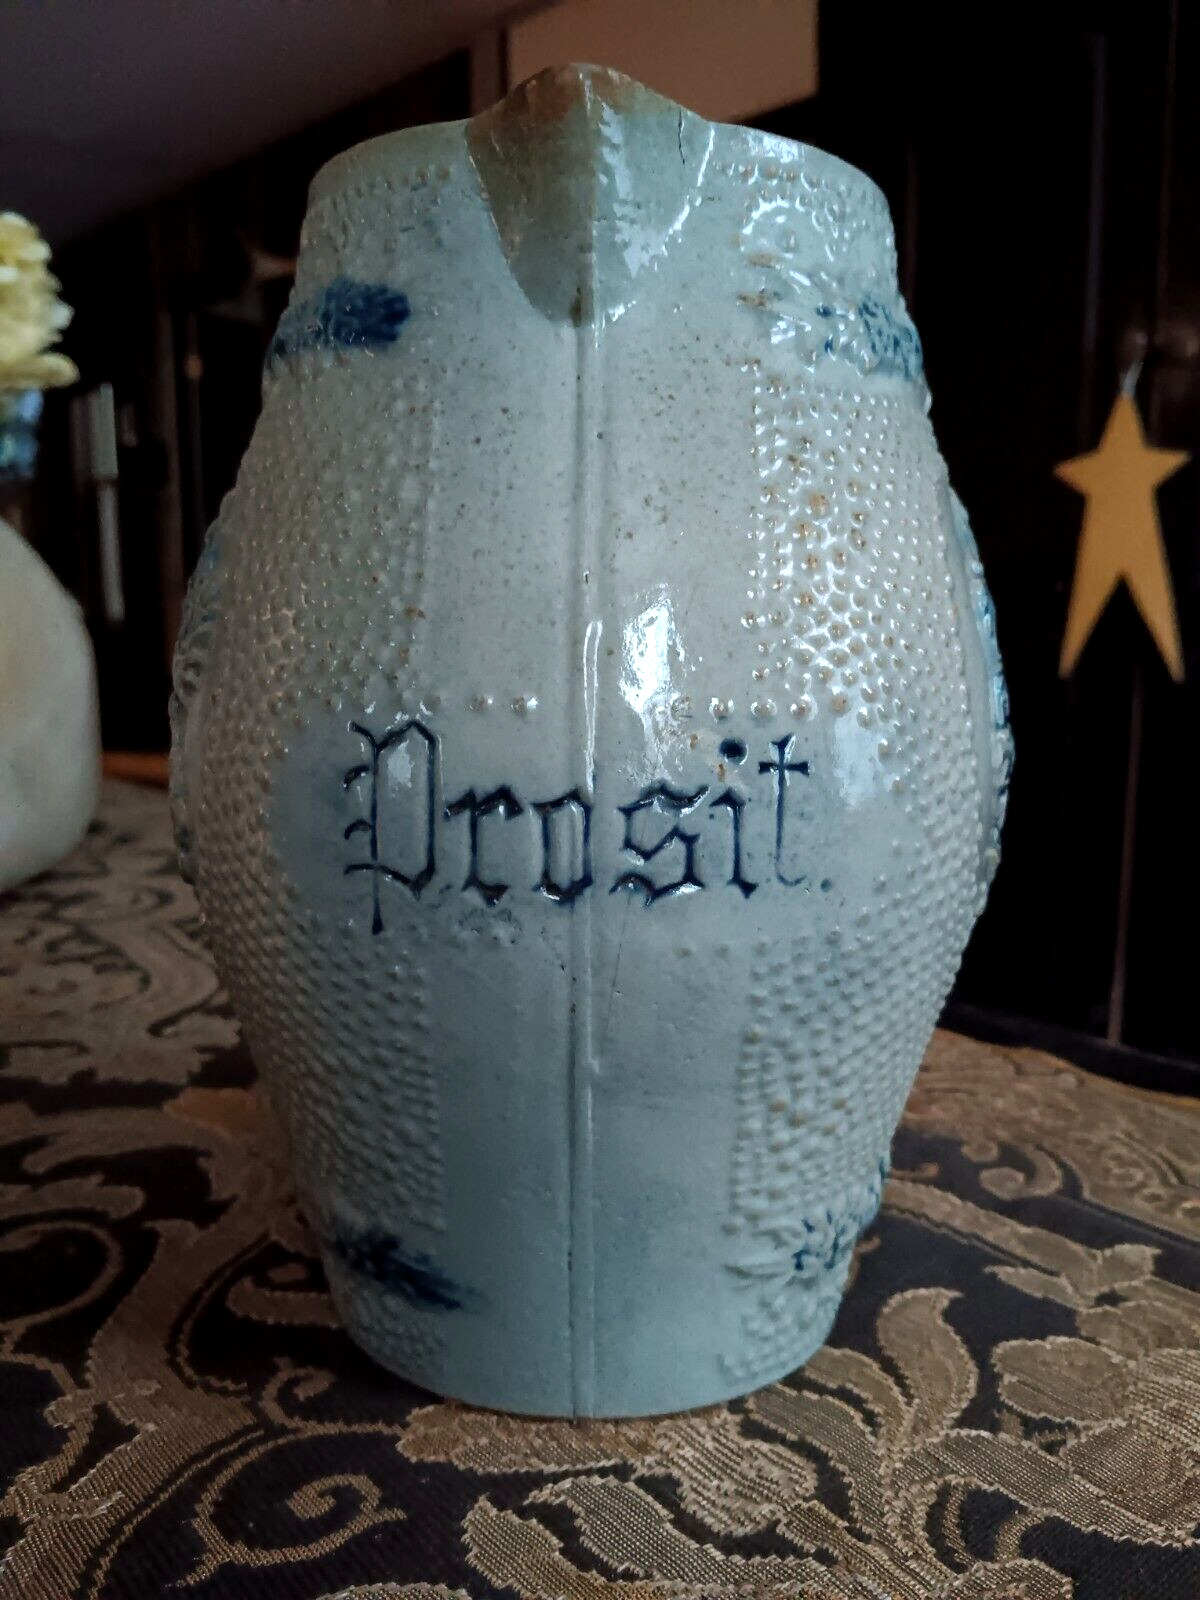 Antq Whites Utica PROSIT (Cheers) Salt Glazed Stoneware Beer Pitcher Circa 1905